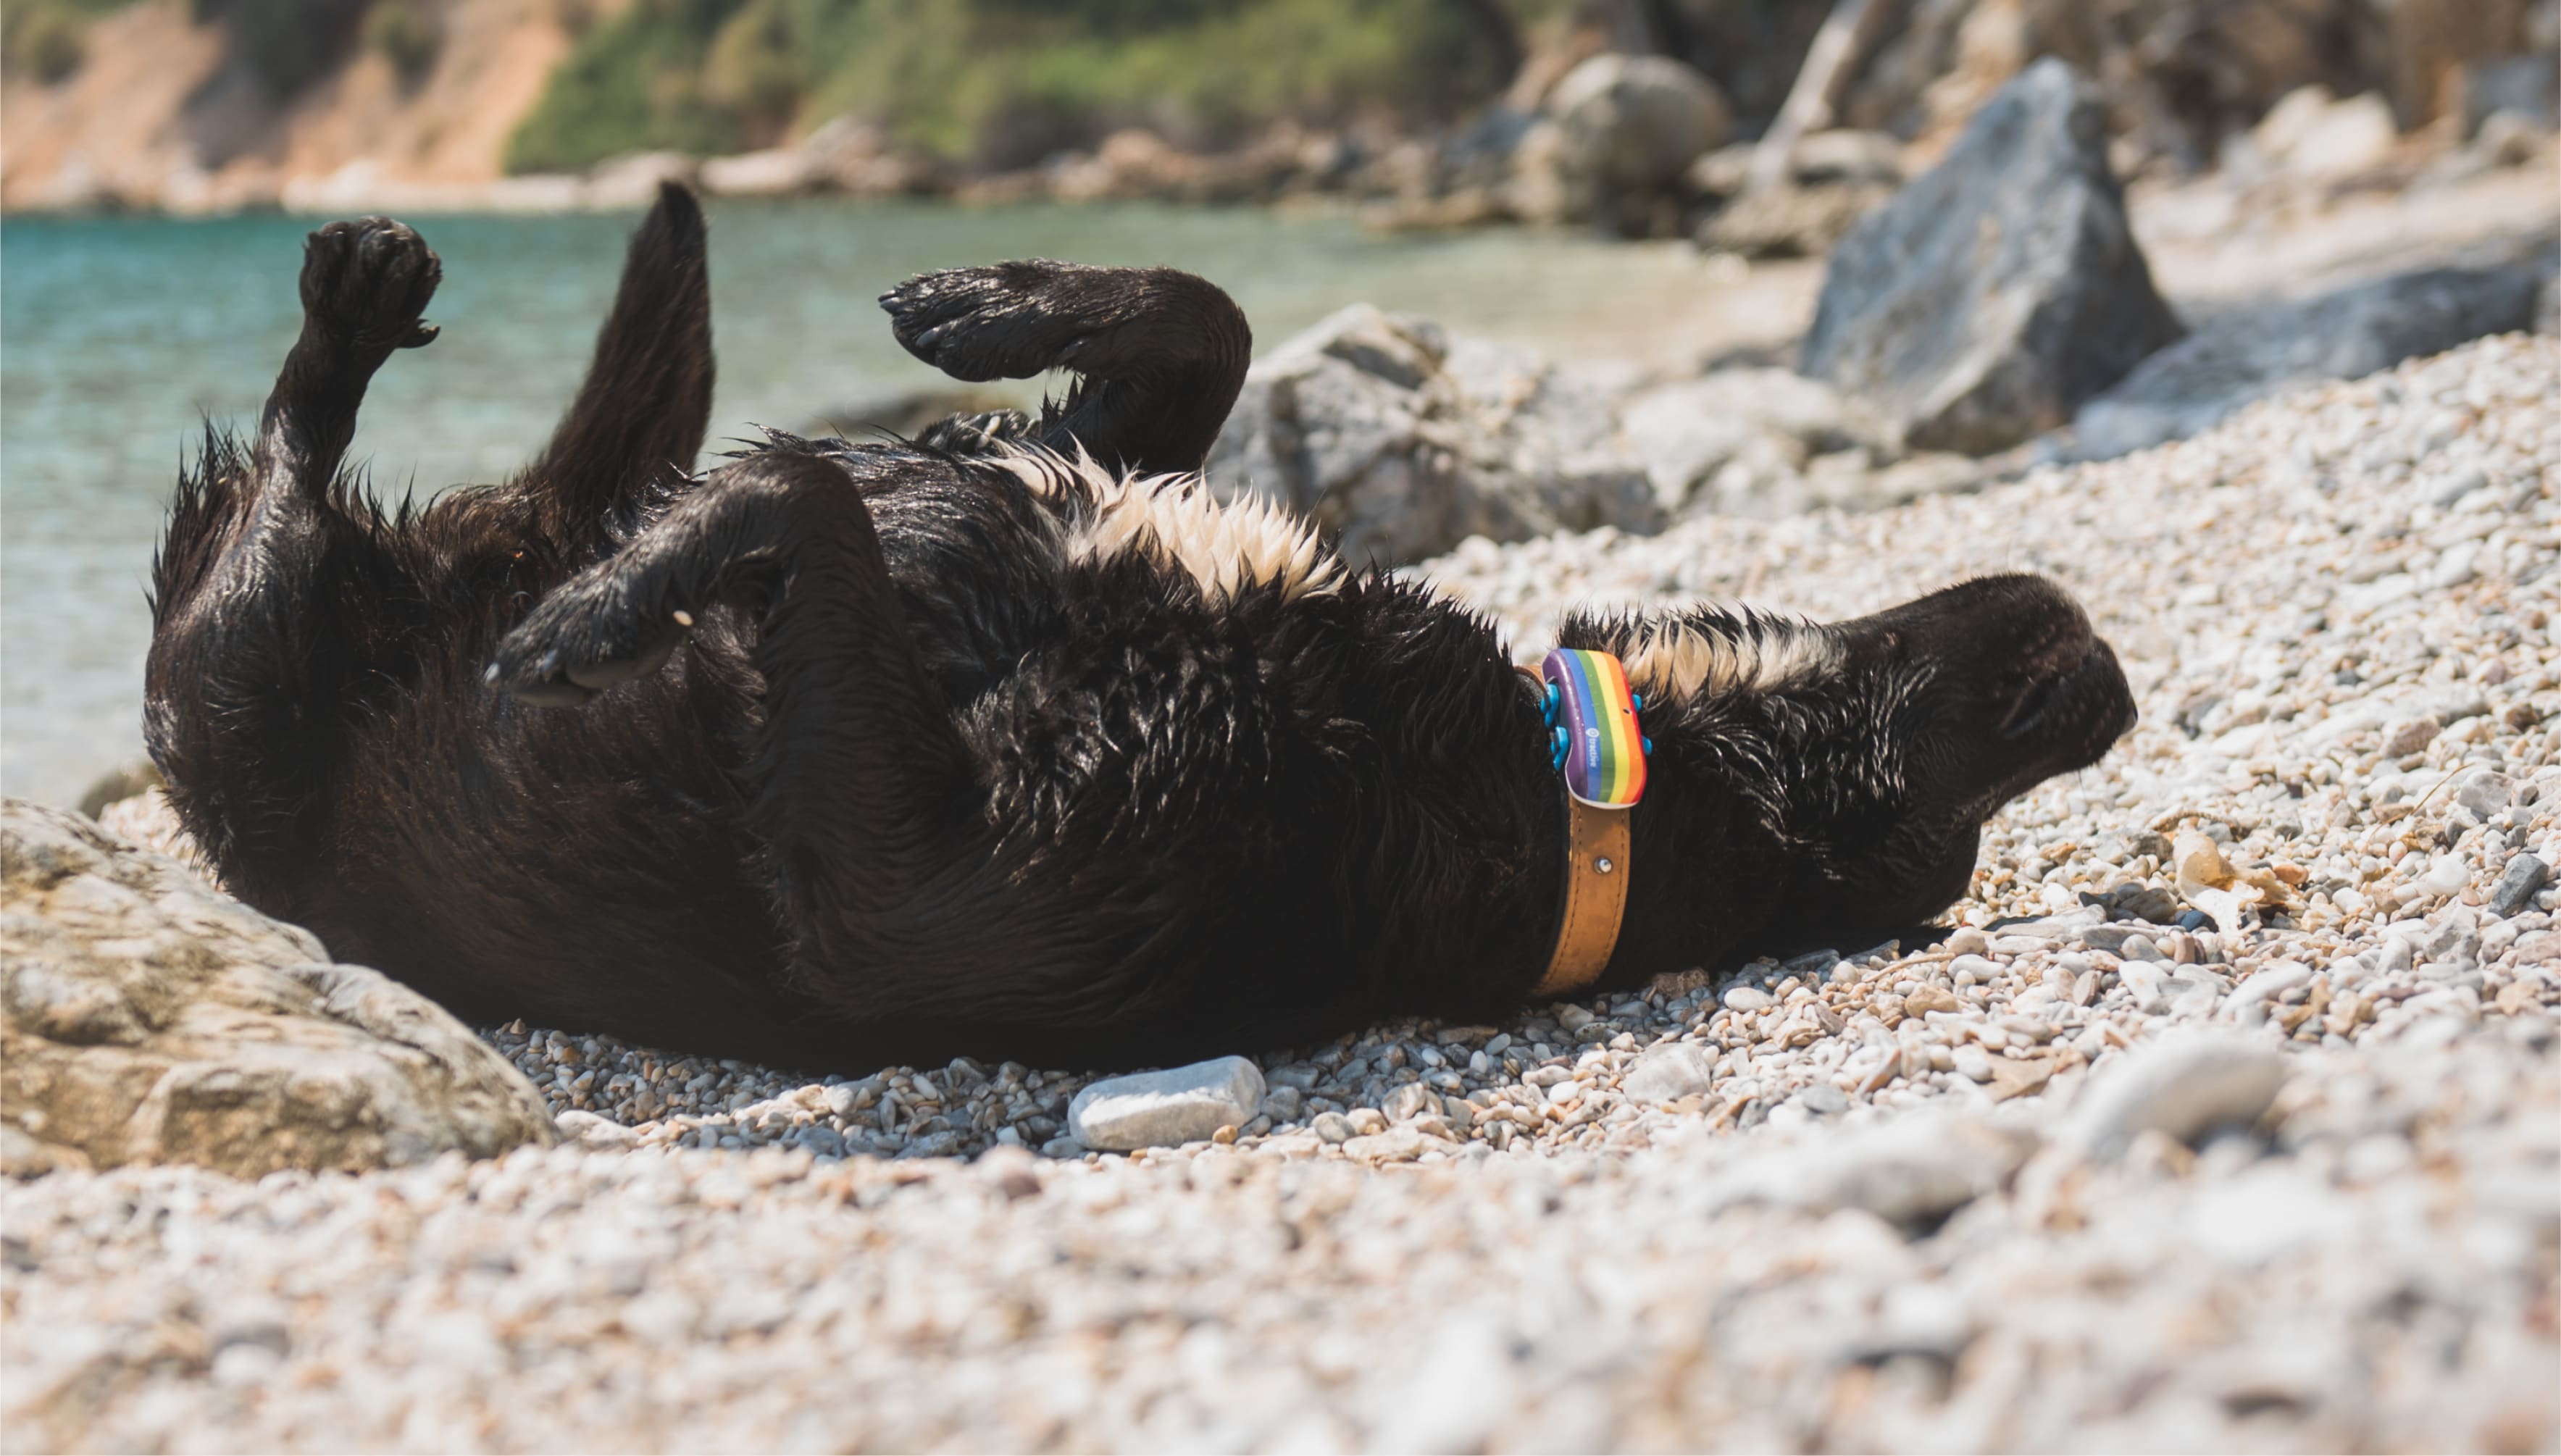 Joukko koiria, joilla on GPS-paikannin, leikkii rannalla